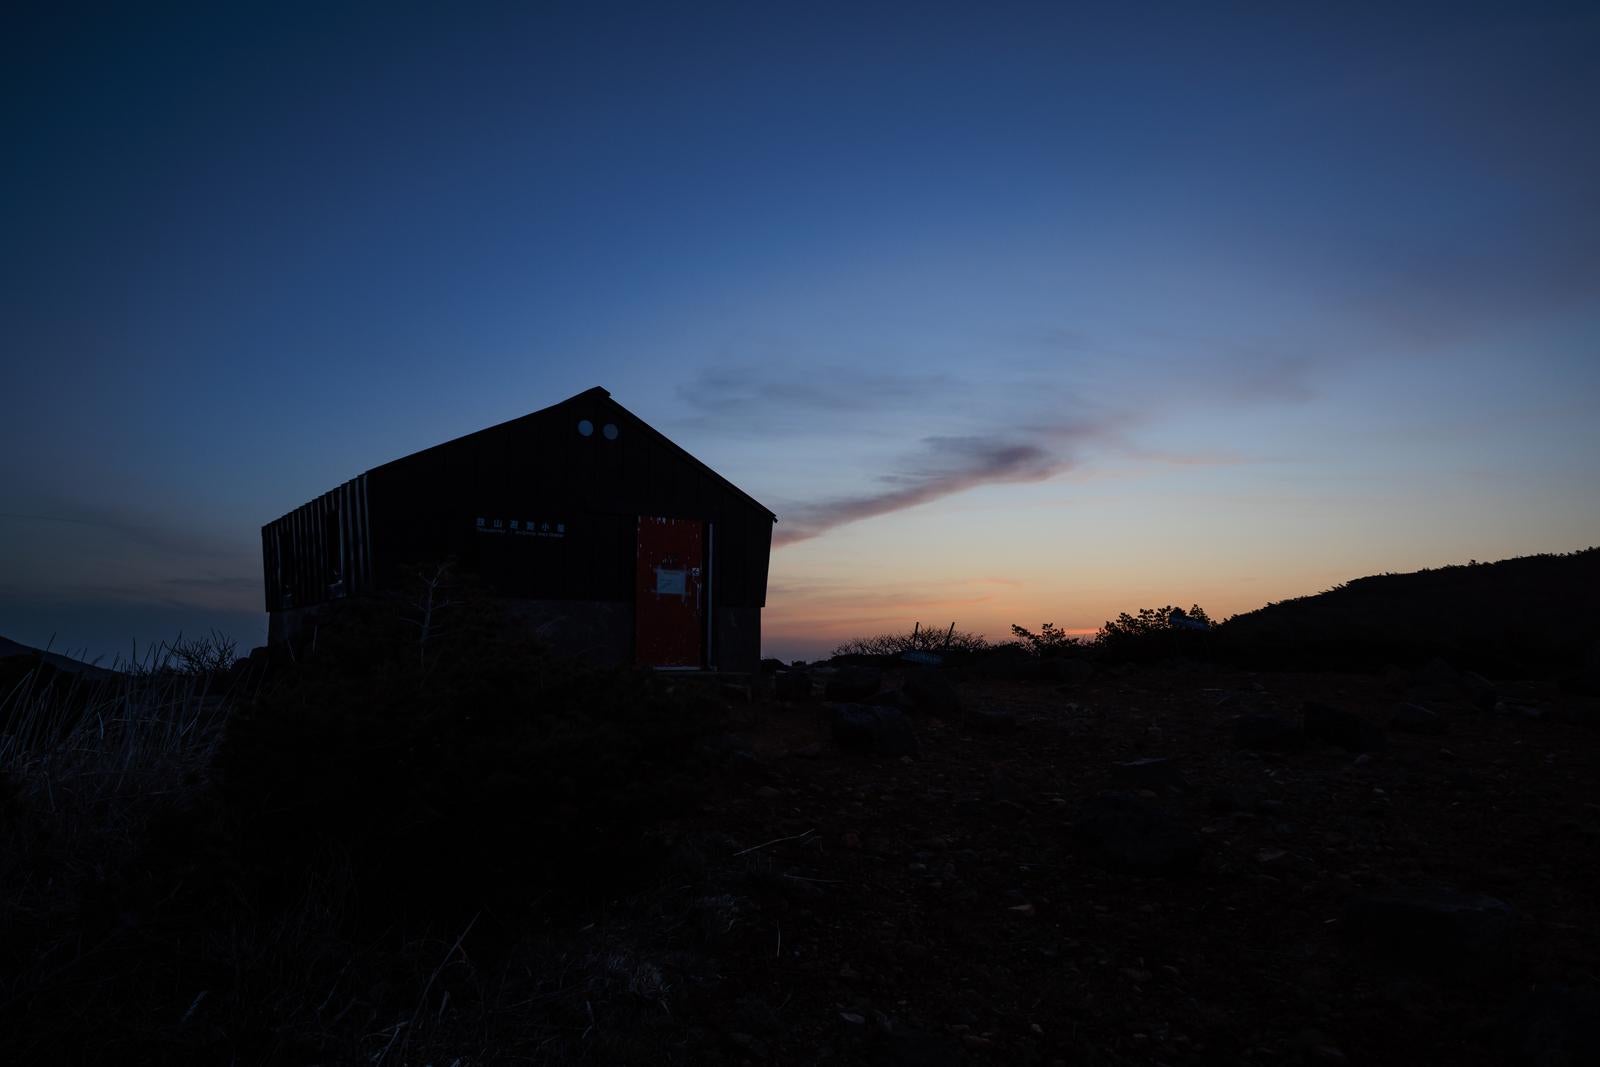 「薄明に浮かぶ鉄山避難小屋のシルエット」の写真